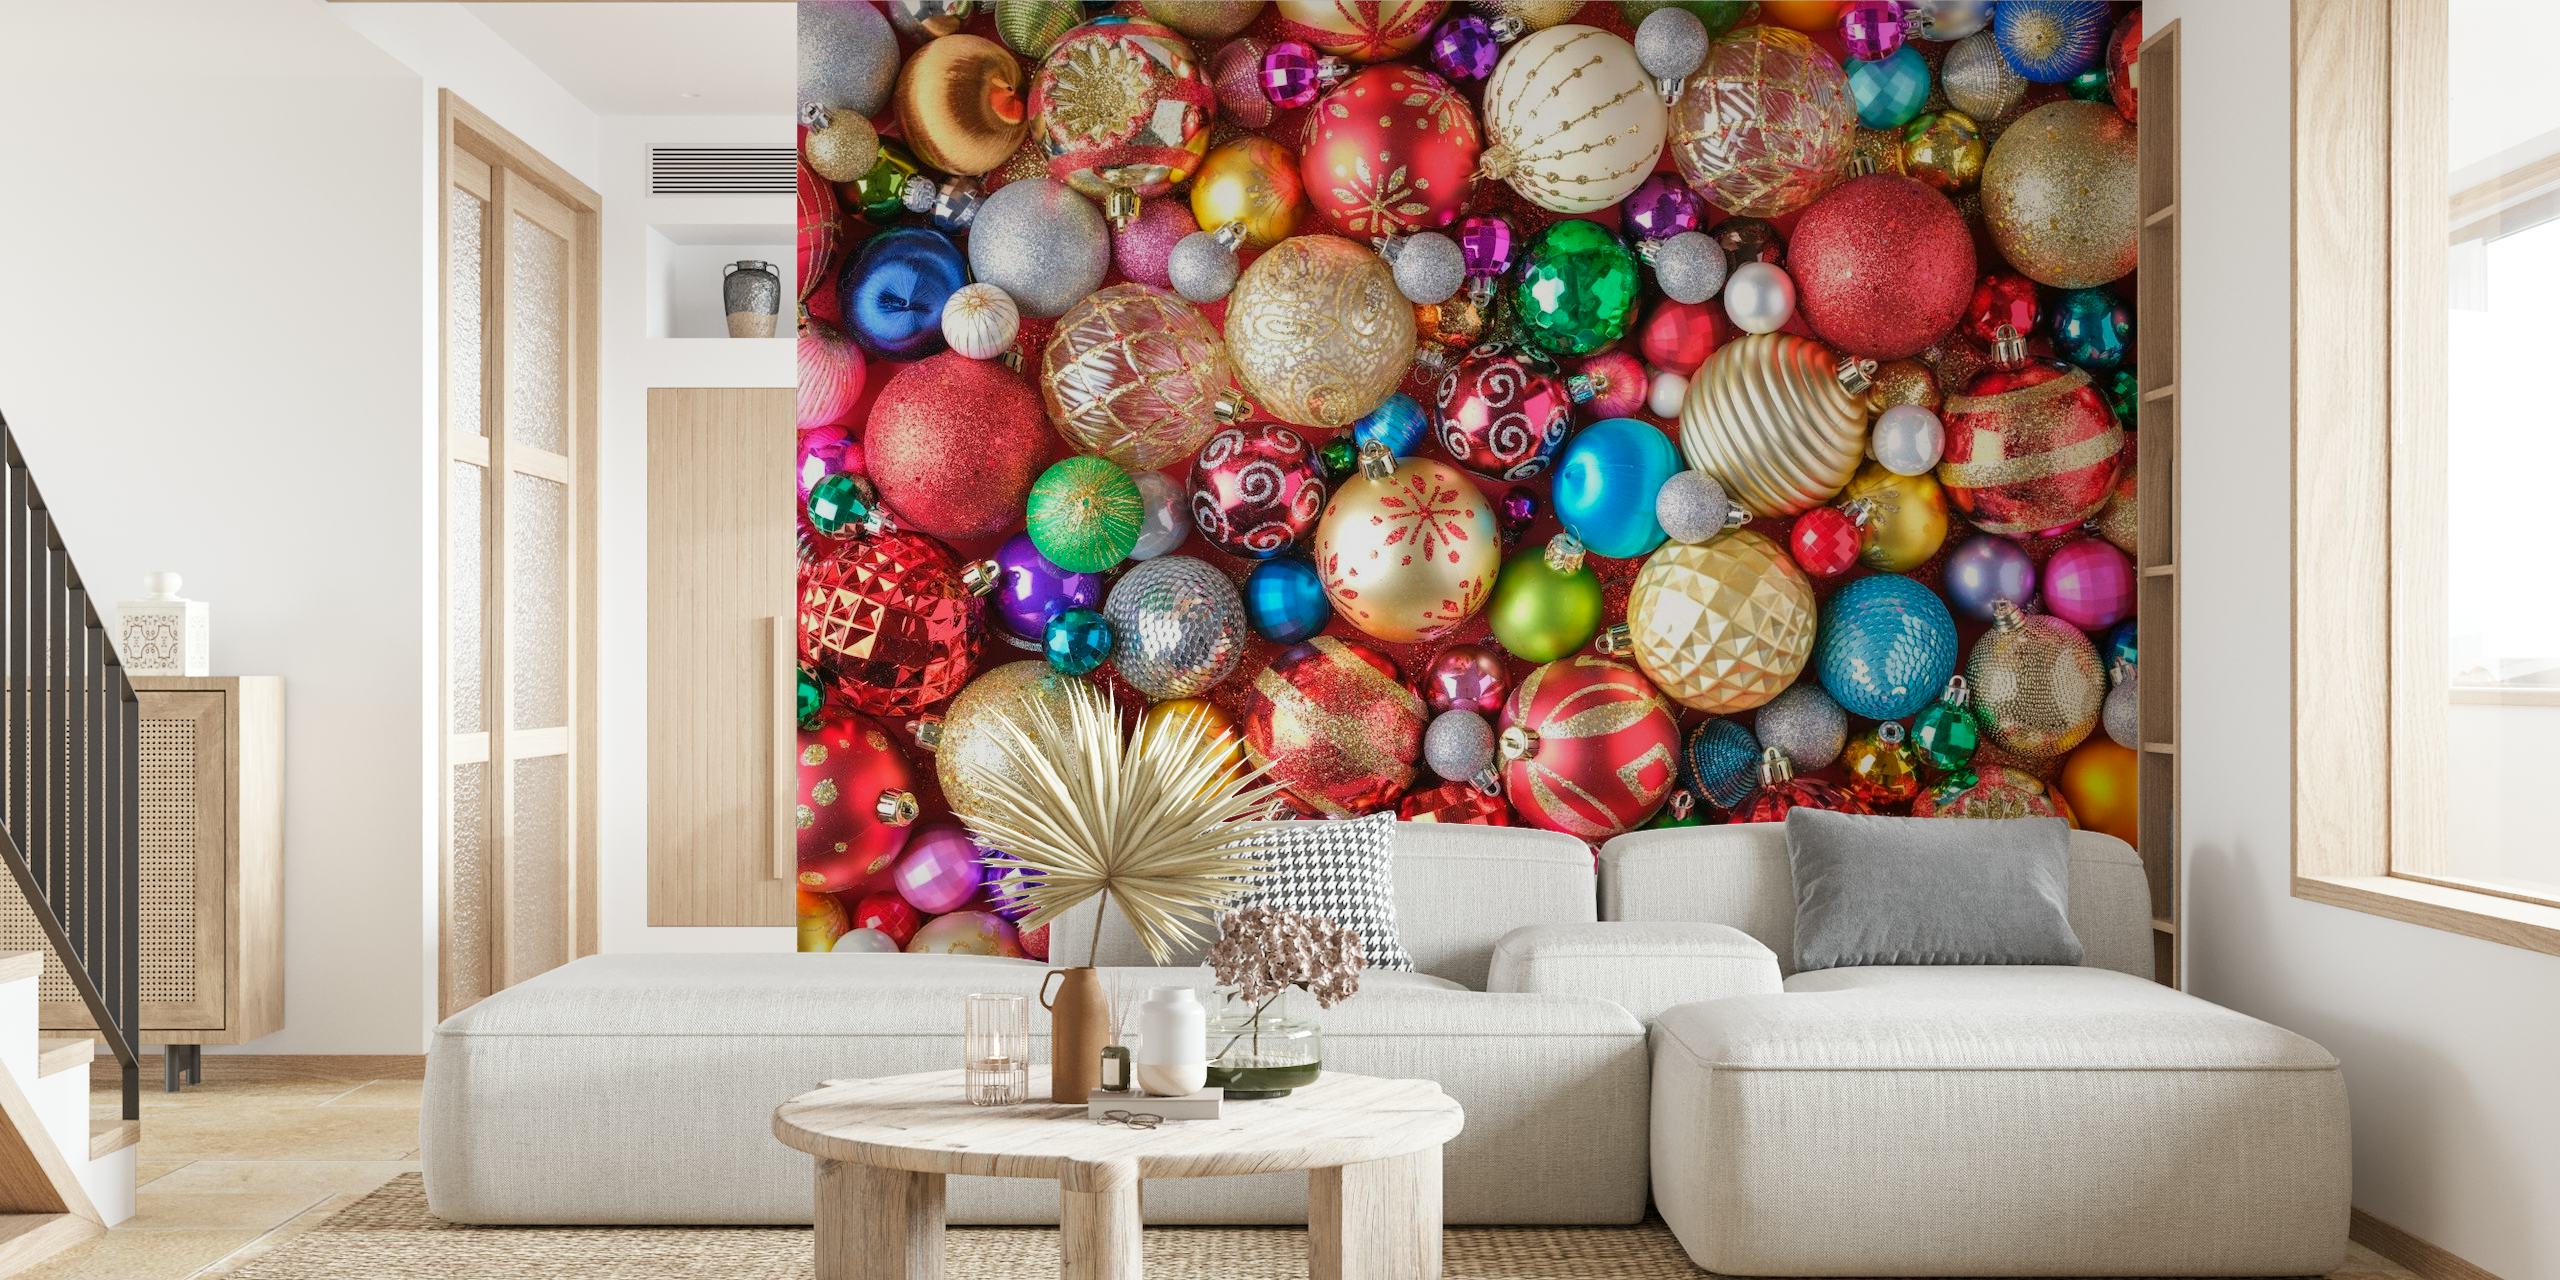 Värikäs joukko joulukoristeita seinämaalauksessa